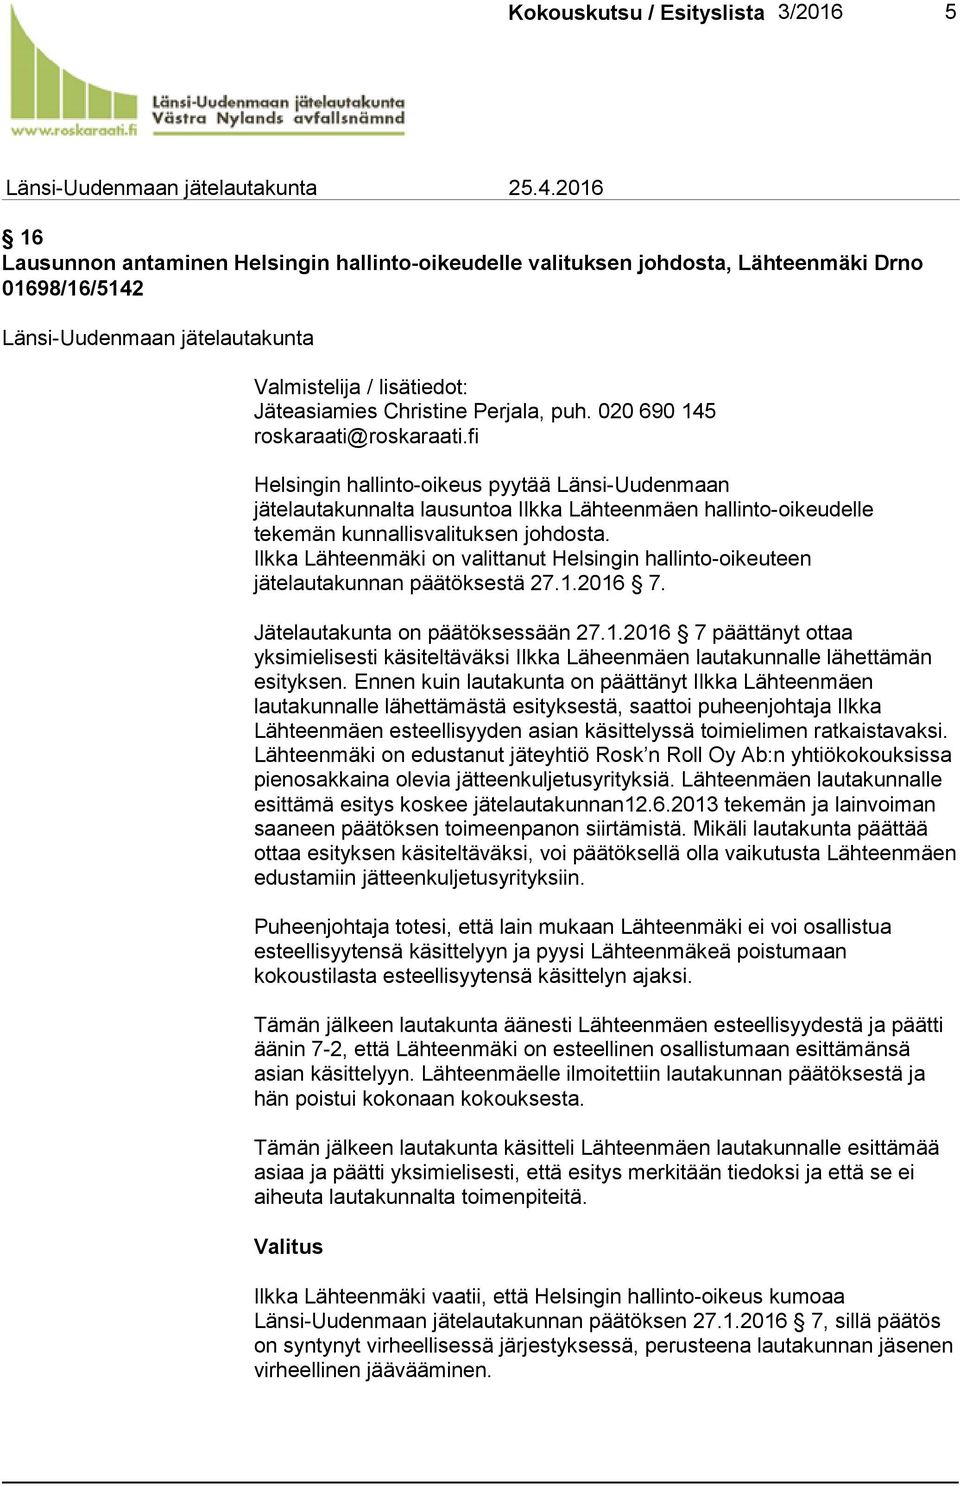 puh. 020 690 145 roskaraati@roskaraati.fi Helsingin hallinto-oikeus pyytää Länsi-Uudenmaan jätelautakunnalta lausuntoa Ilkka Lähteenmäen hallinto-oikeudelle tekemän kunnallisvalituksen johdosta.